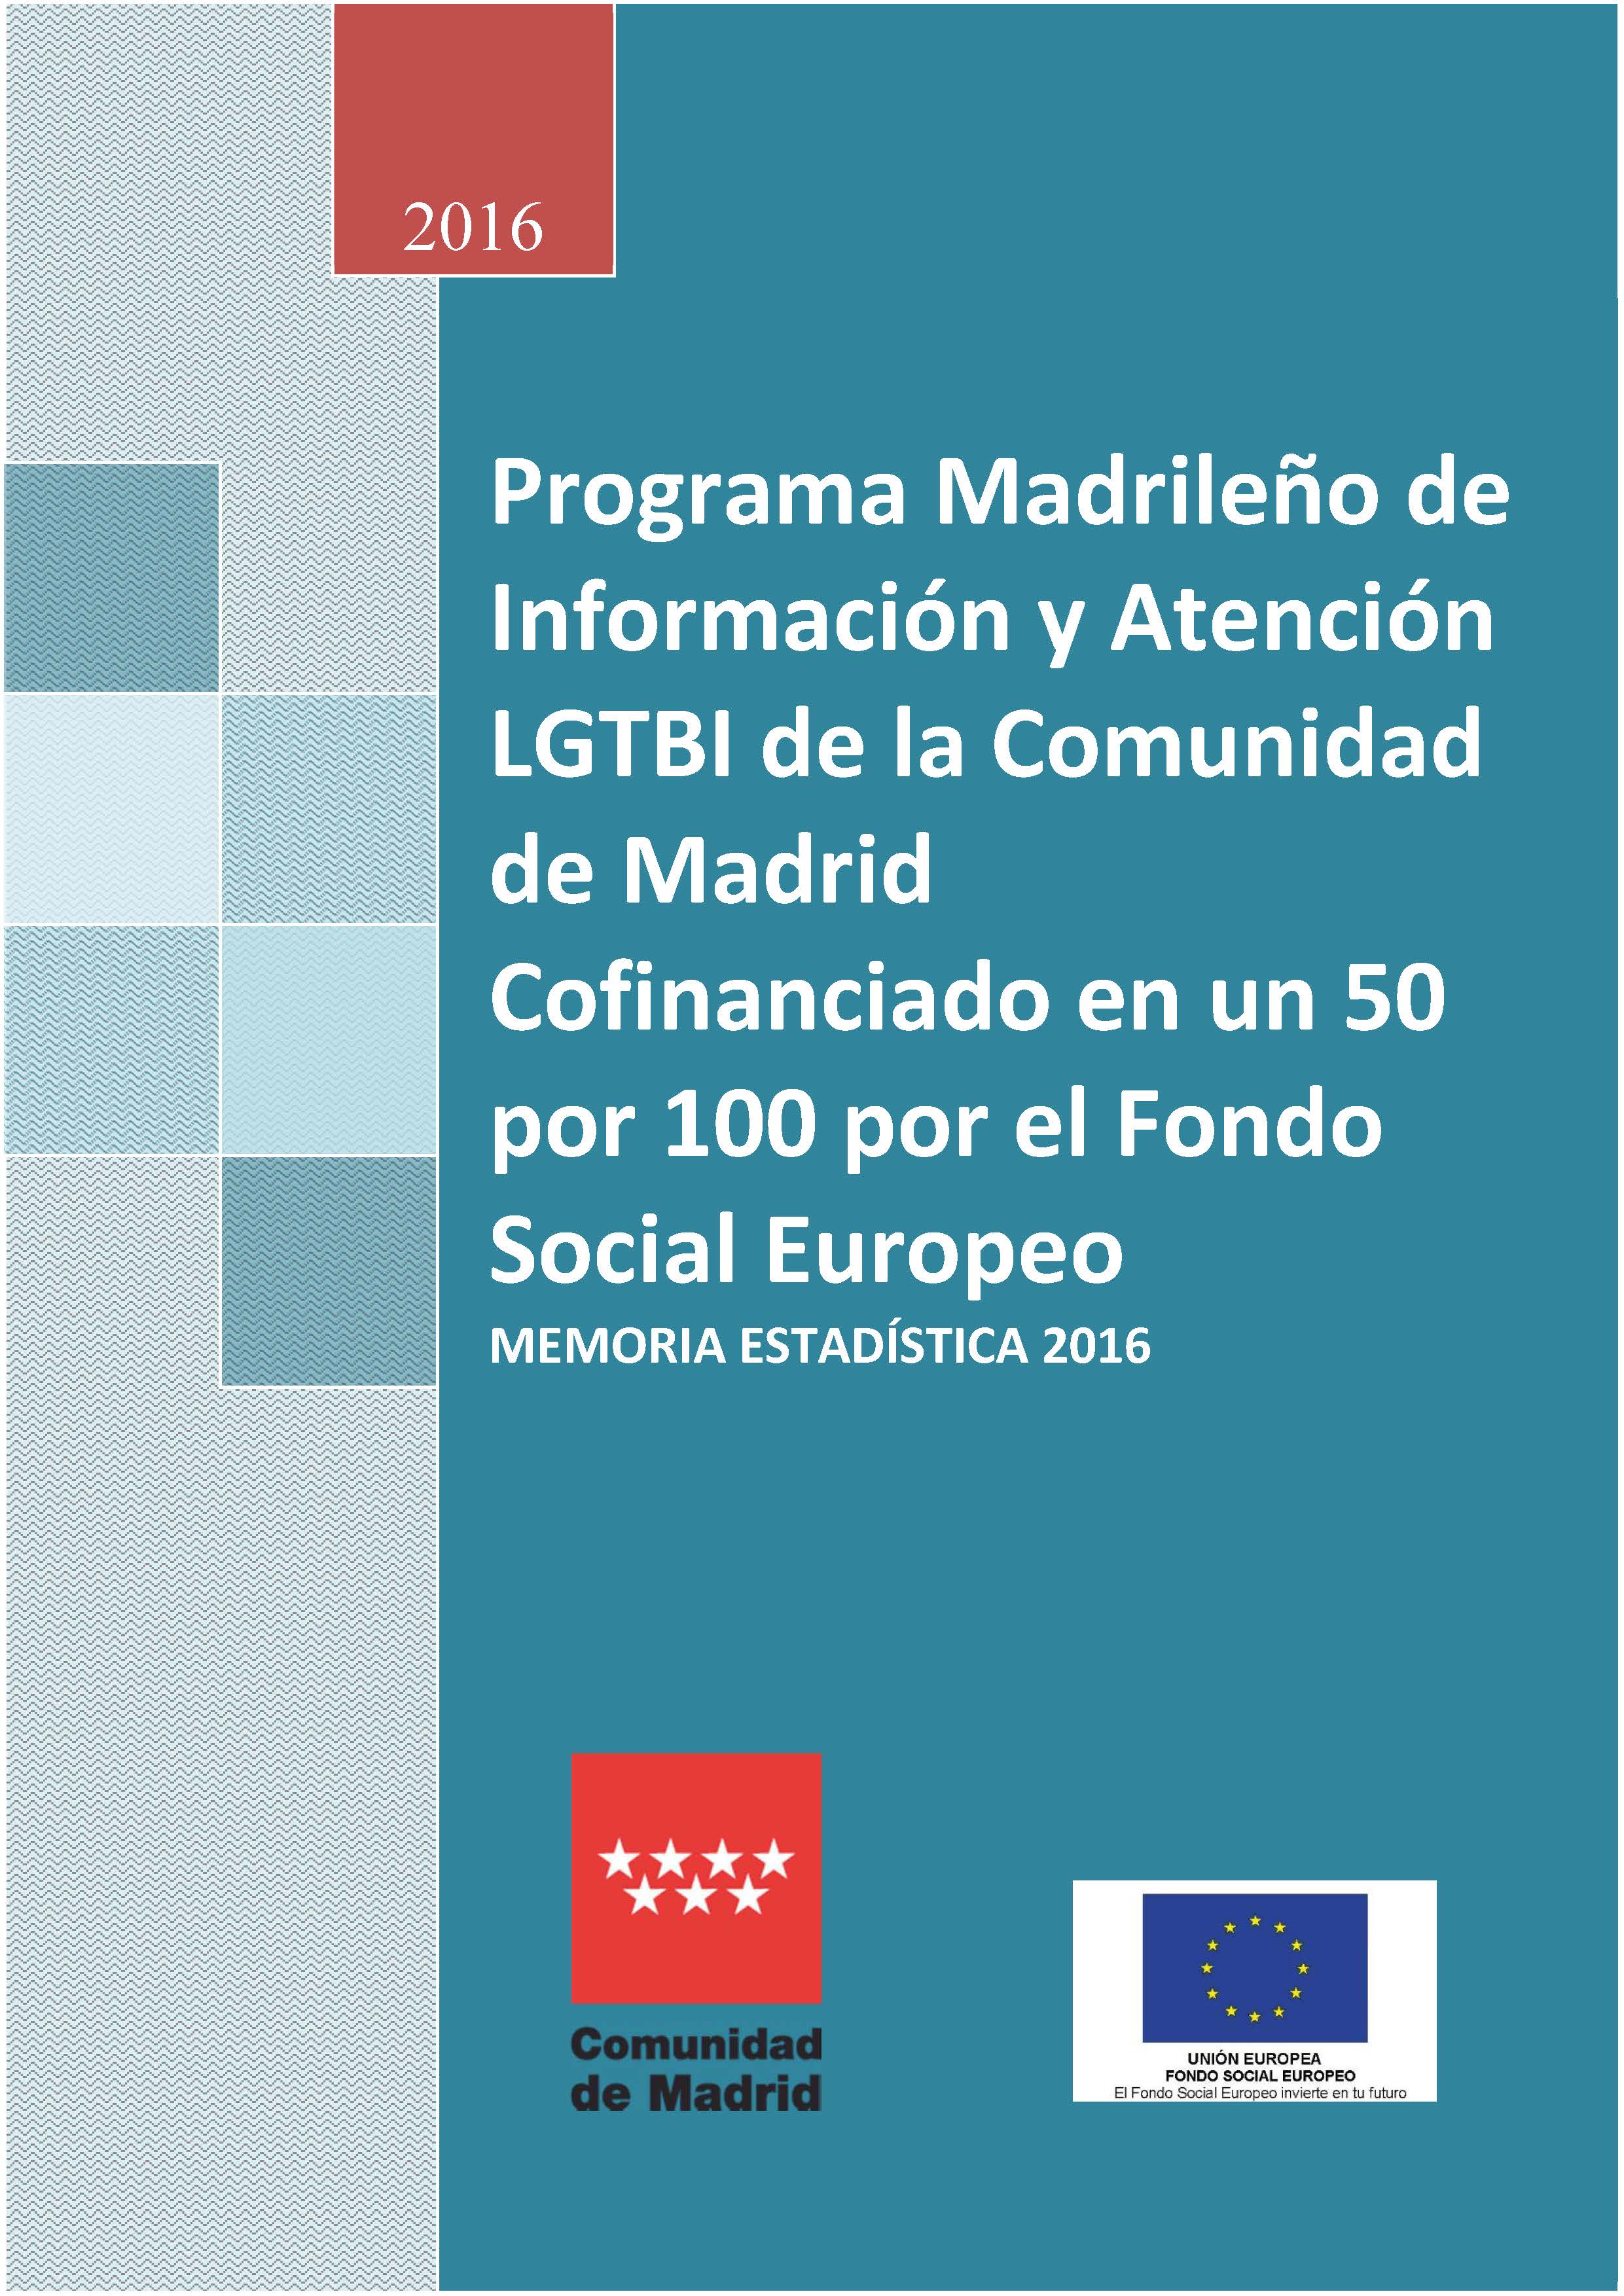 Portada de Programa Madrileño de Información y Atención LGTBI de la Comunidad de Madrid cofinanciado en un 50 por 100 por el Fondo Social Europeo.  Memoria estadística 2016.